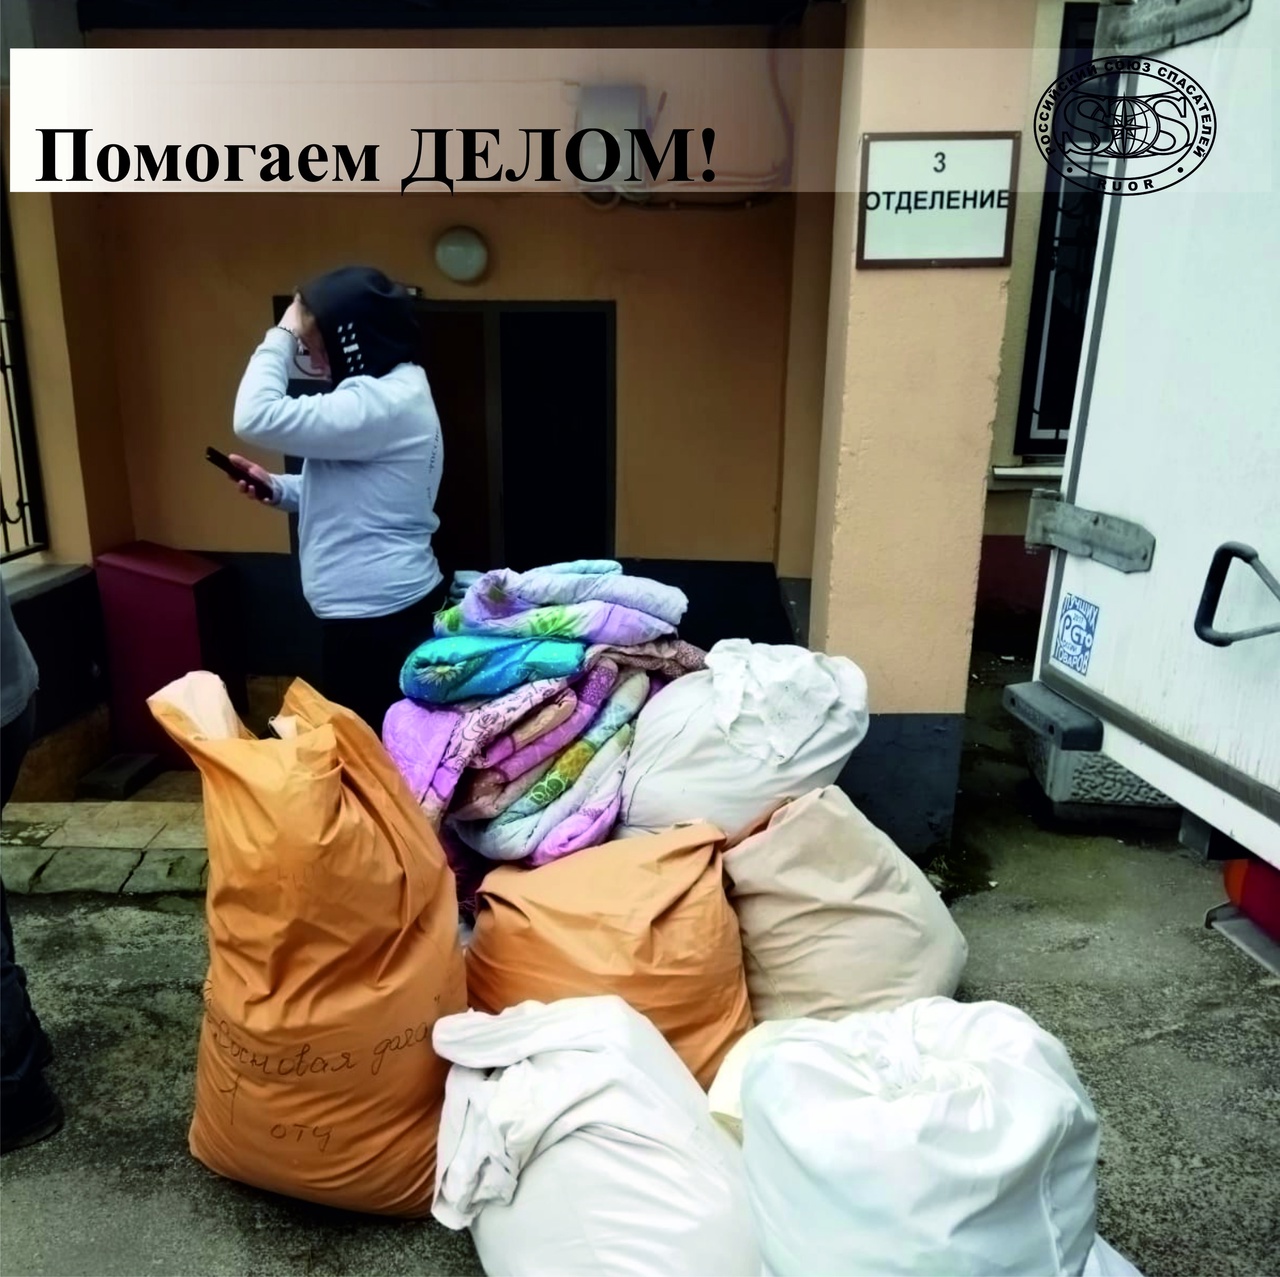 Общероссийская общественная организация «Российский союз спасателей» приняла активное участие в оказании гуманитарной помощи вынужденным переселенцам из Донецкой и Луганской народных республик